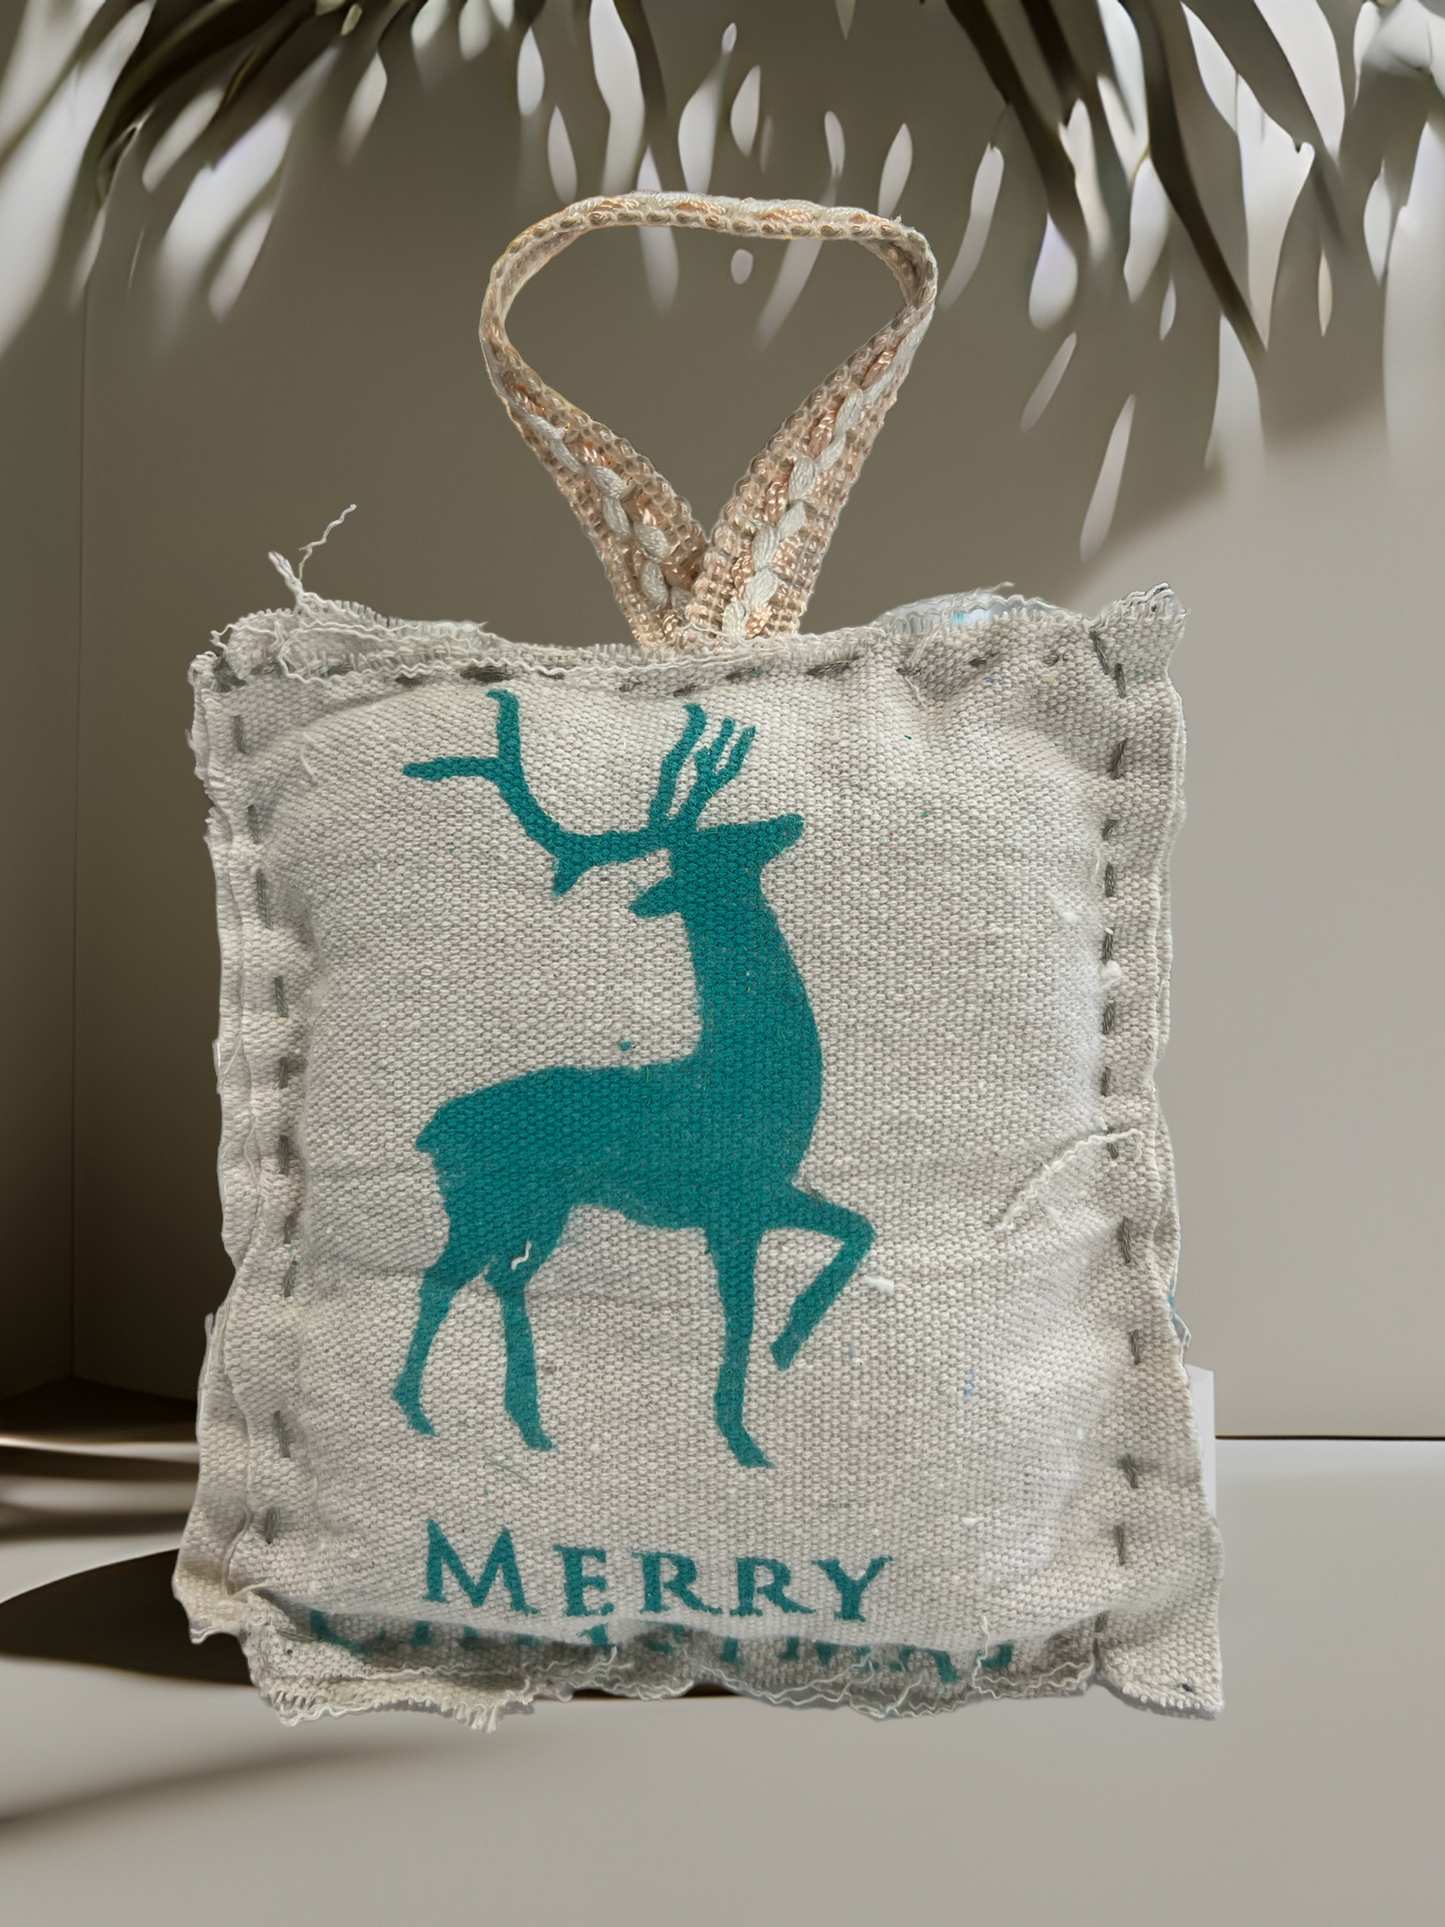 Make & Take Kit Pillow Ornament